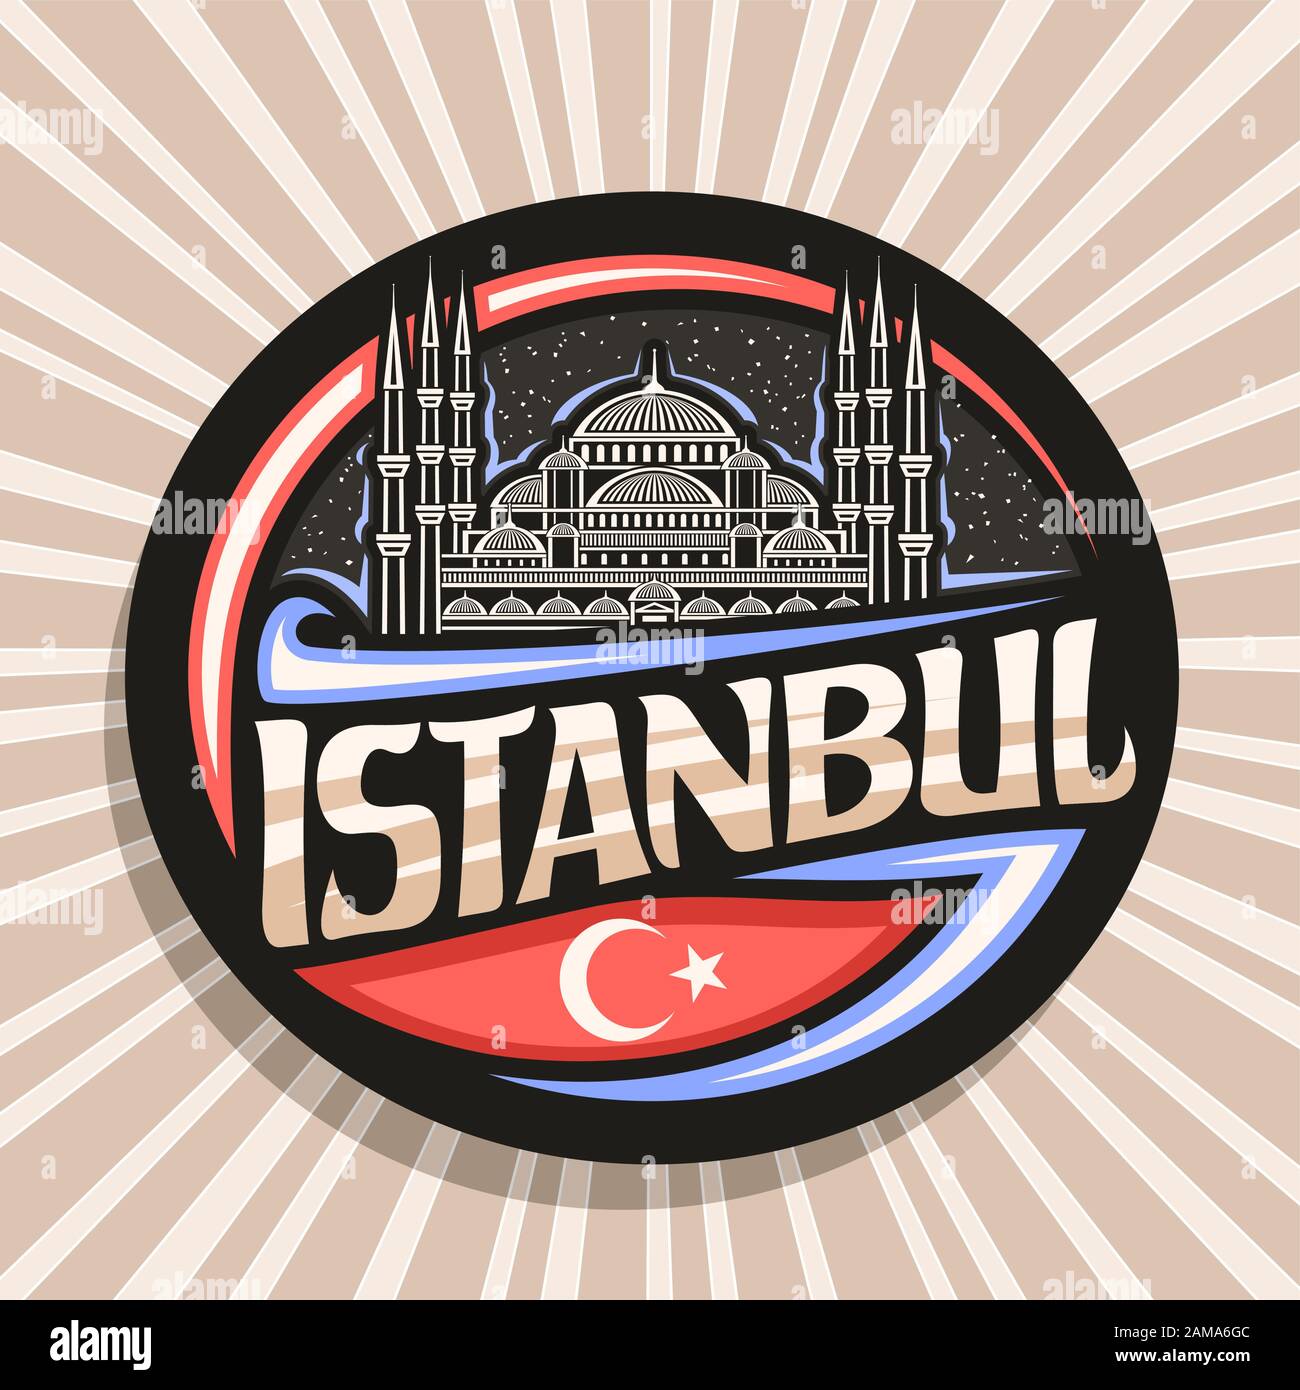 Vektorlogo für Istanbul, dunkle dekorative runde Markierung mit Zeichnung Illustration von Sultanahmet Camii auf himmelhintergrund, Touristenmagnet mit Bürste Stock Vektor